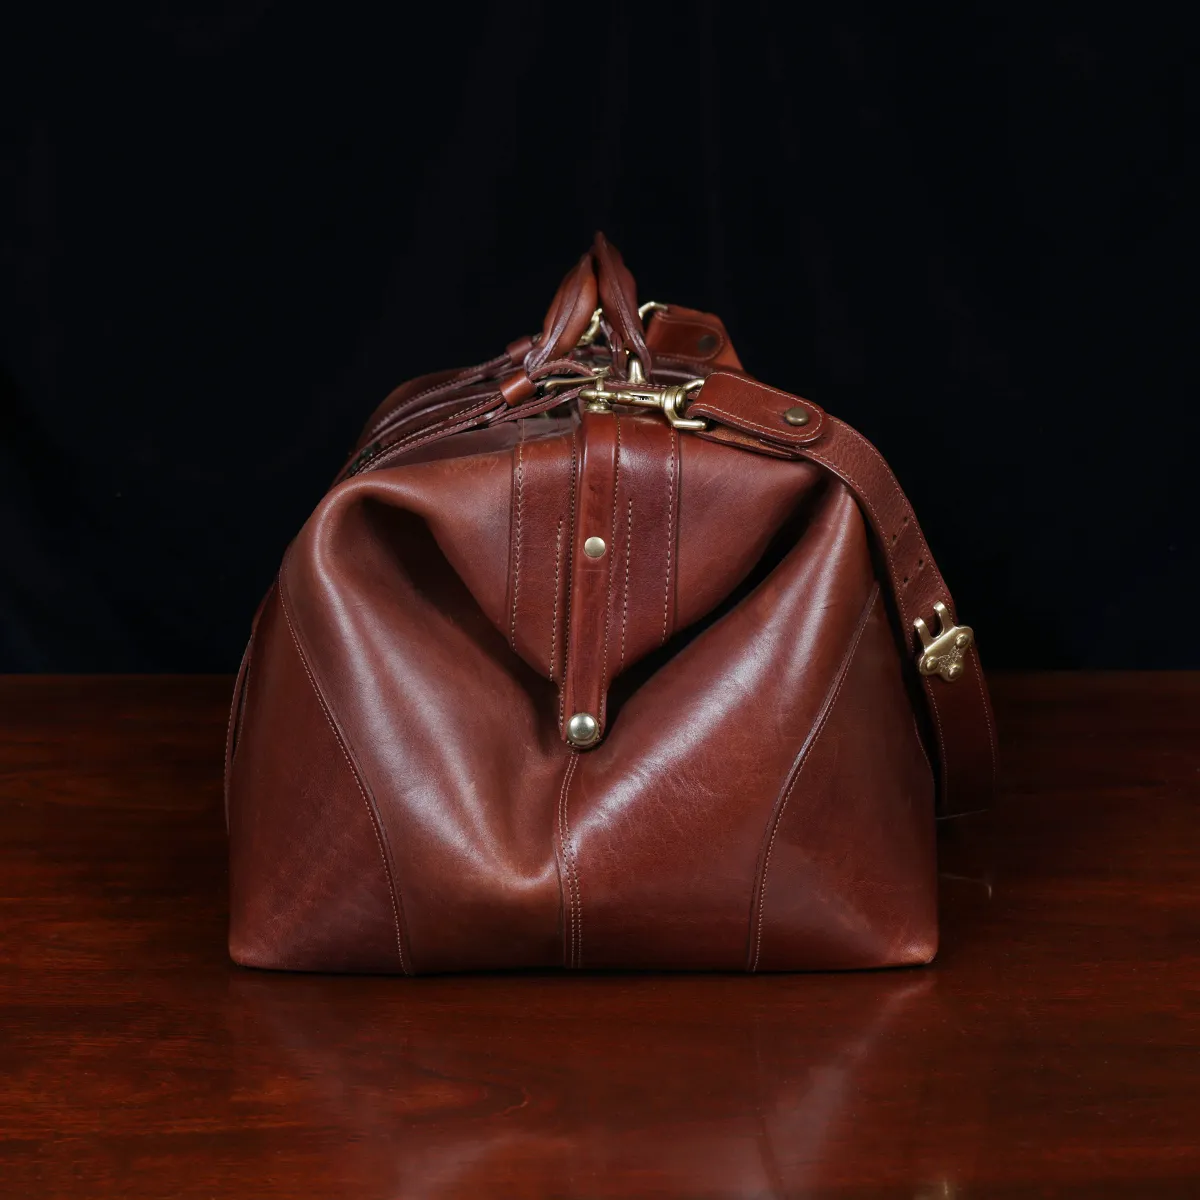 Vintage Women's Bag - Brown